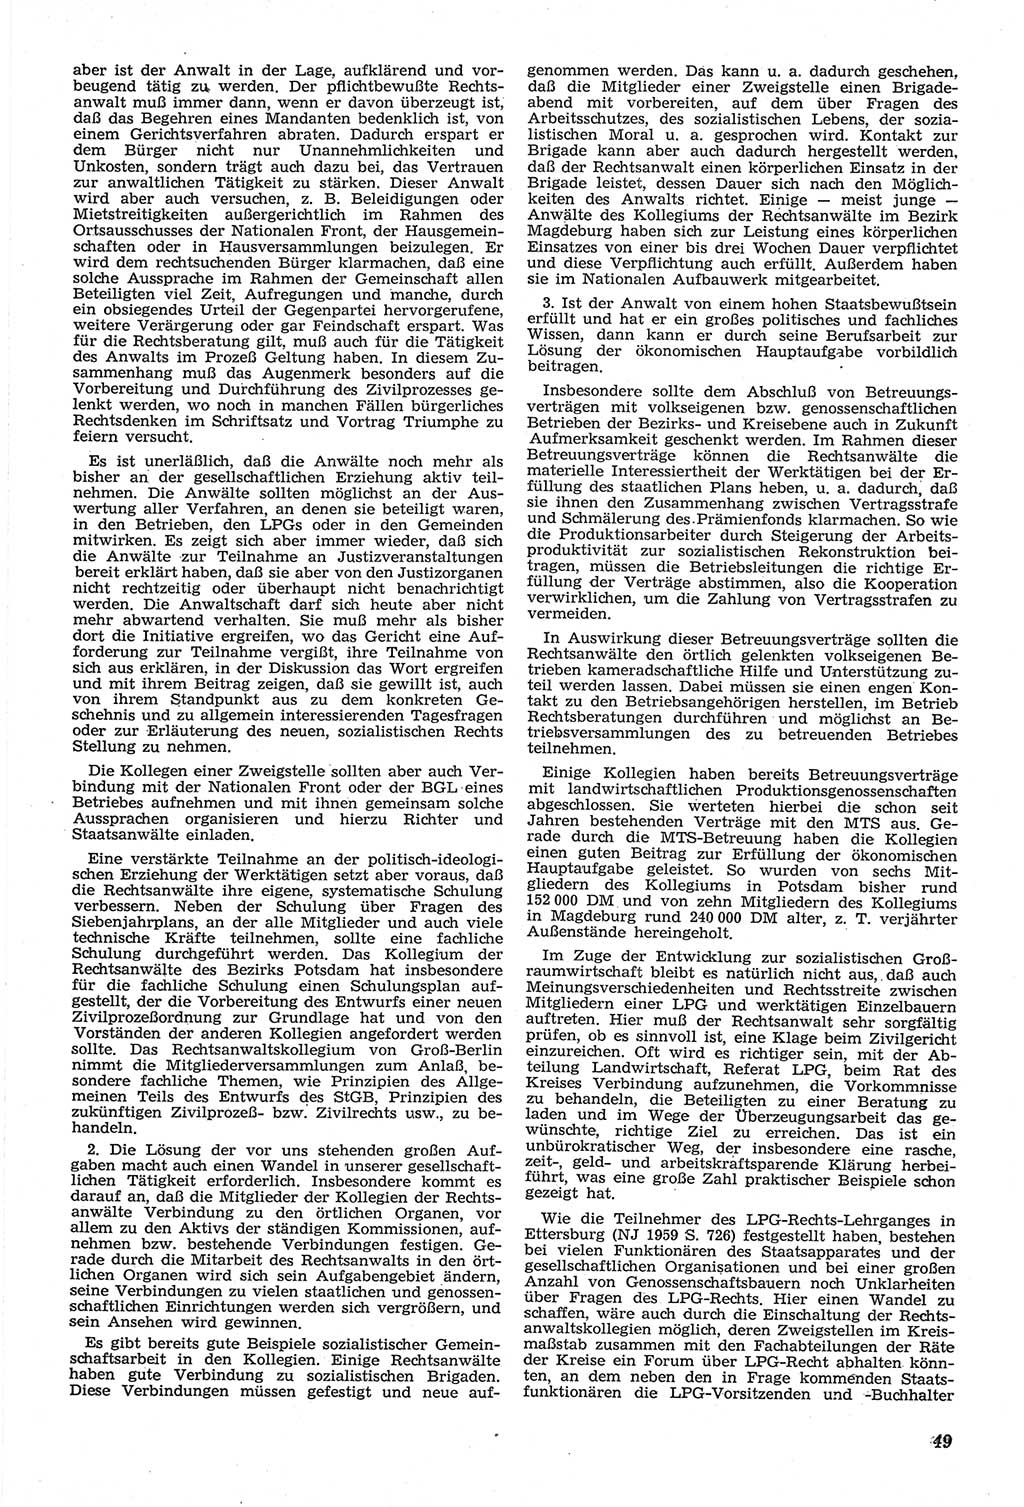 Neue Justiz (NJ), Zeitschrift für Recht und Rechtswissenschaft [Deutsche Demokratische Republik (DDR)], 14. Jahrgang 1960, Seite 49 (NJ DDR 1960, S. 49)